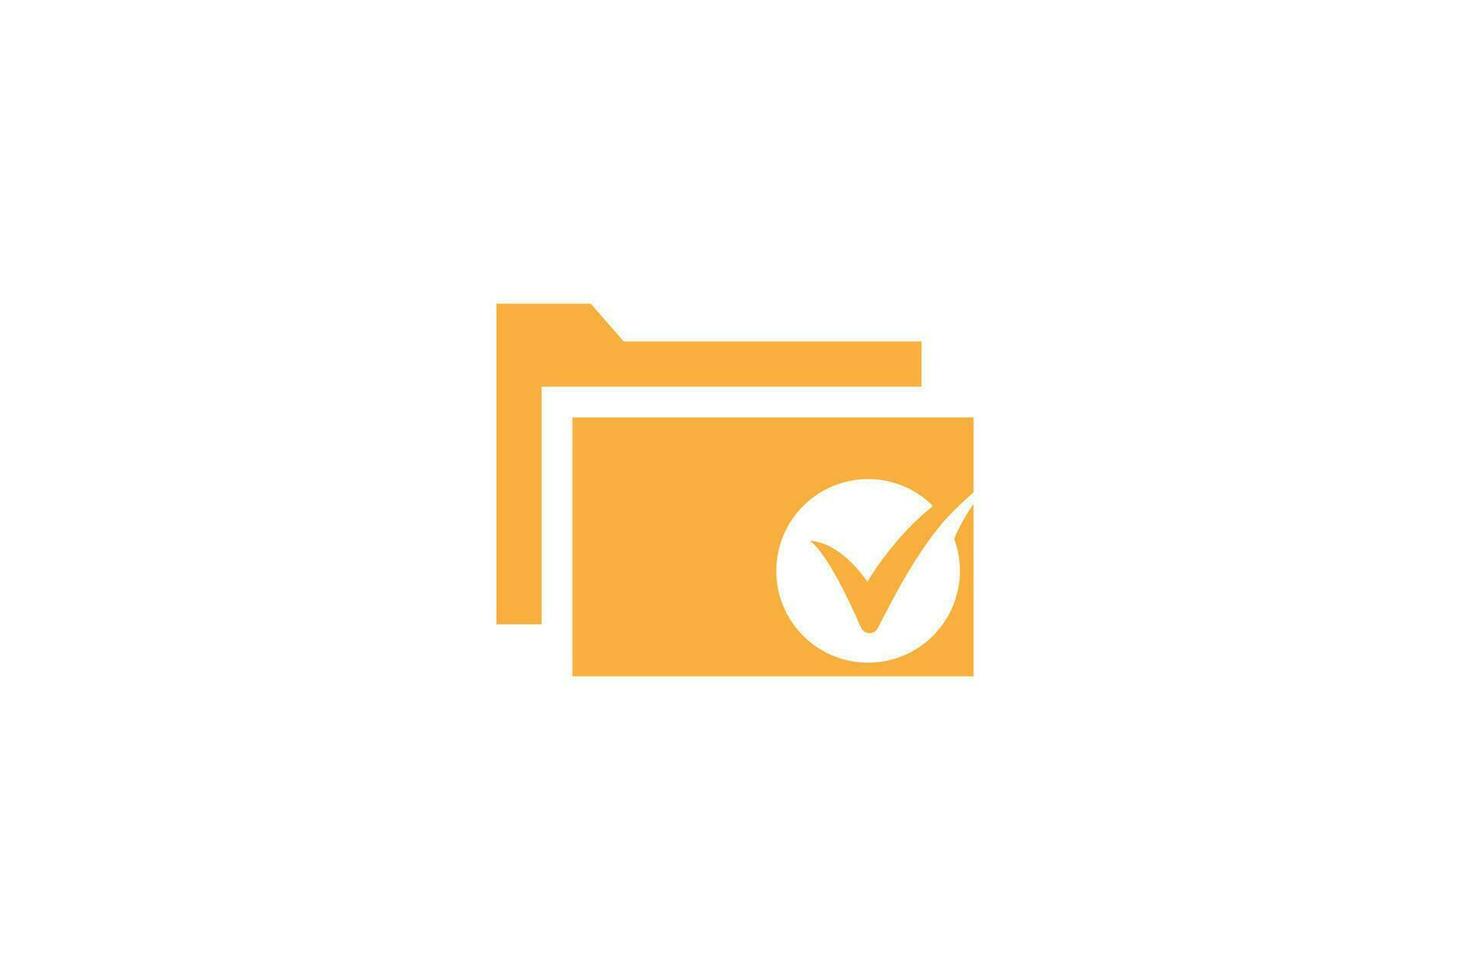 Check folder logo or icon design vector